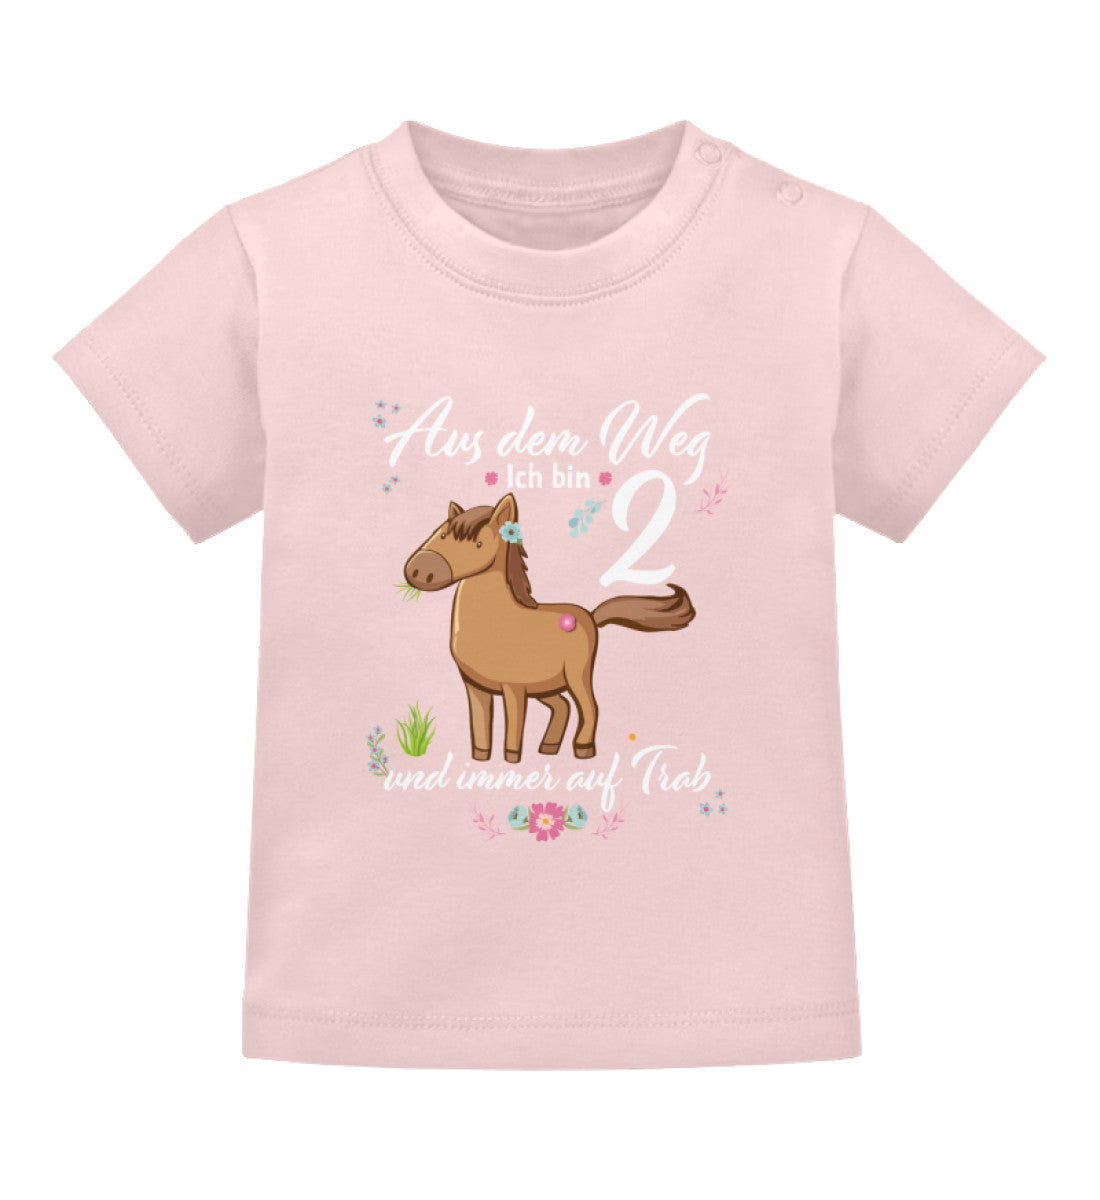 Aus dem Weg ich bin - Shop Pferd Baby - Dorfkind Landwirt T-Shirt 2 